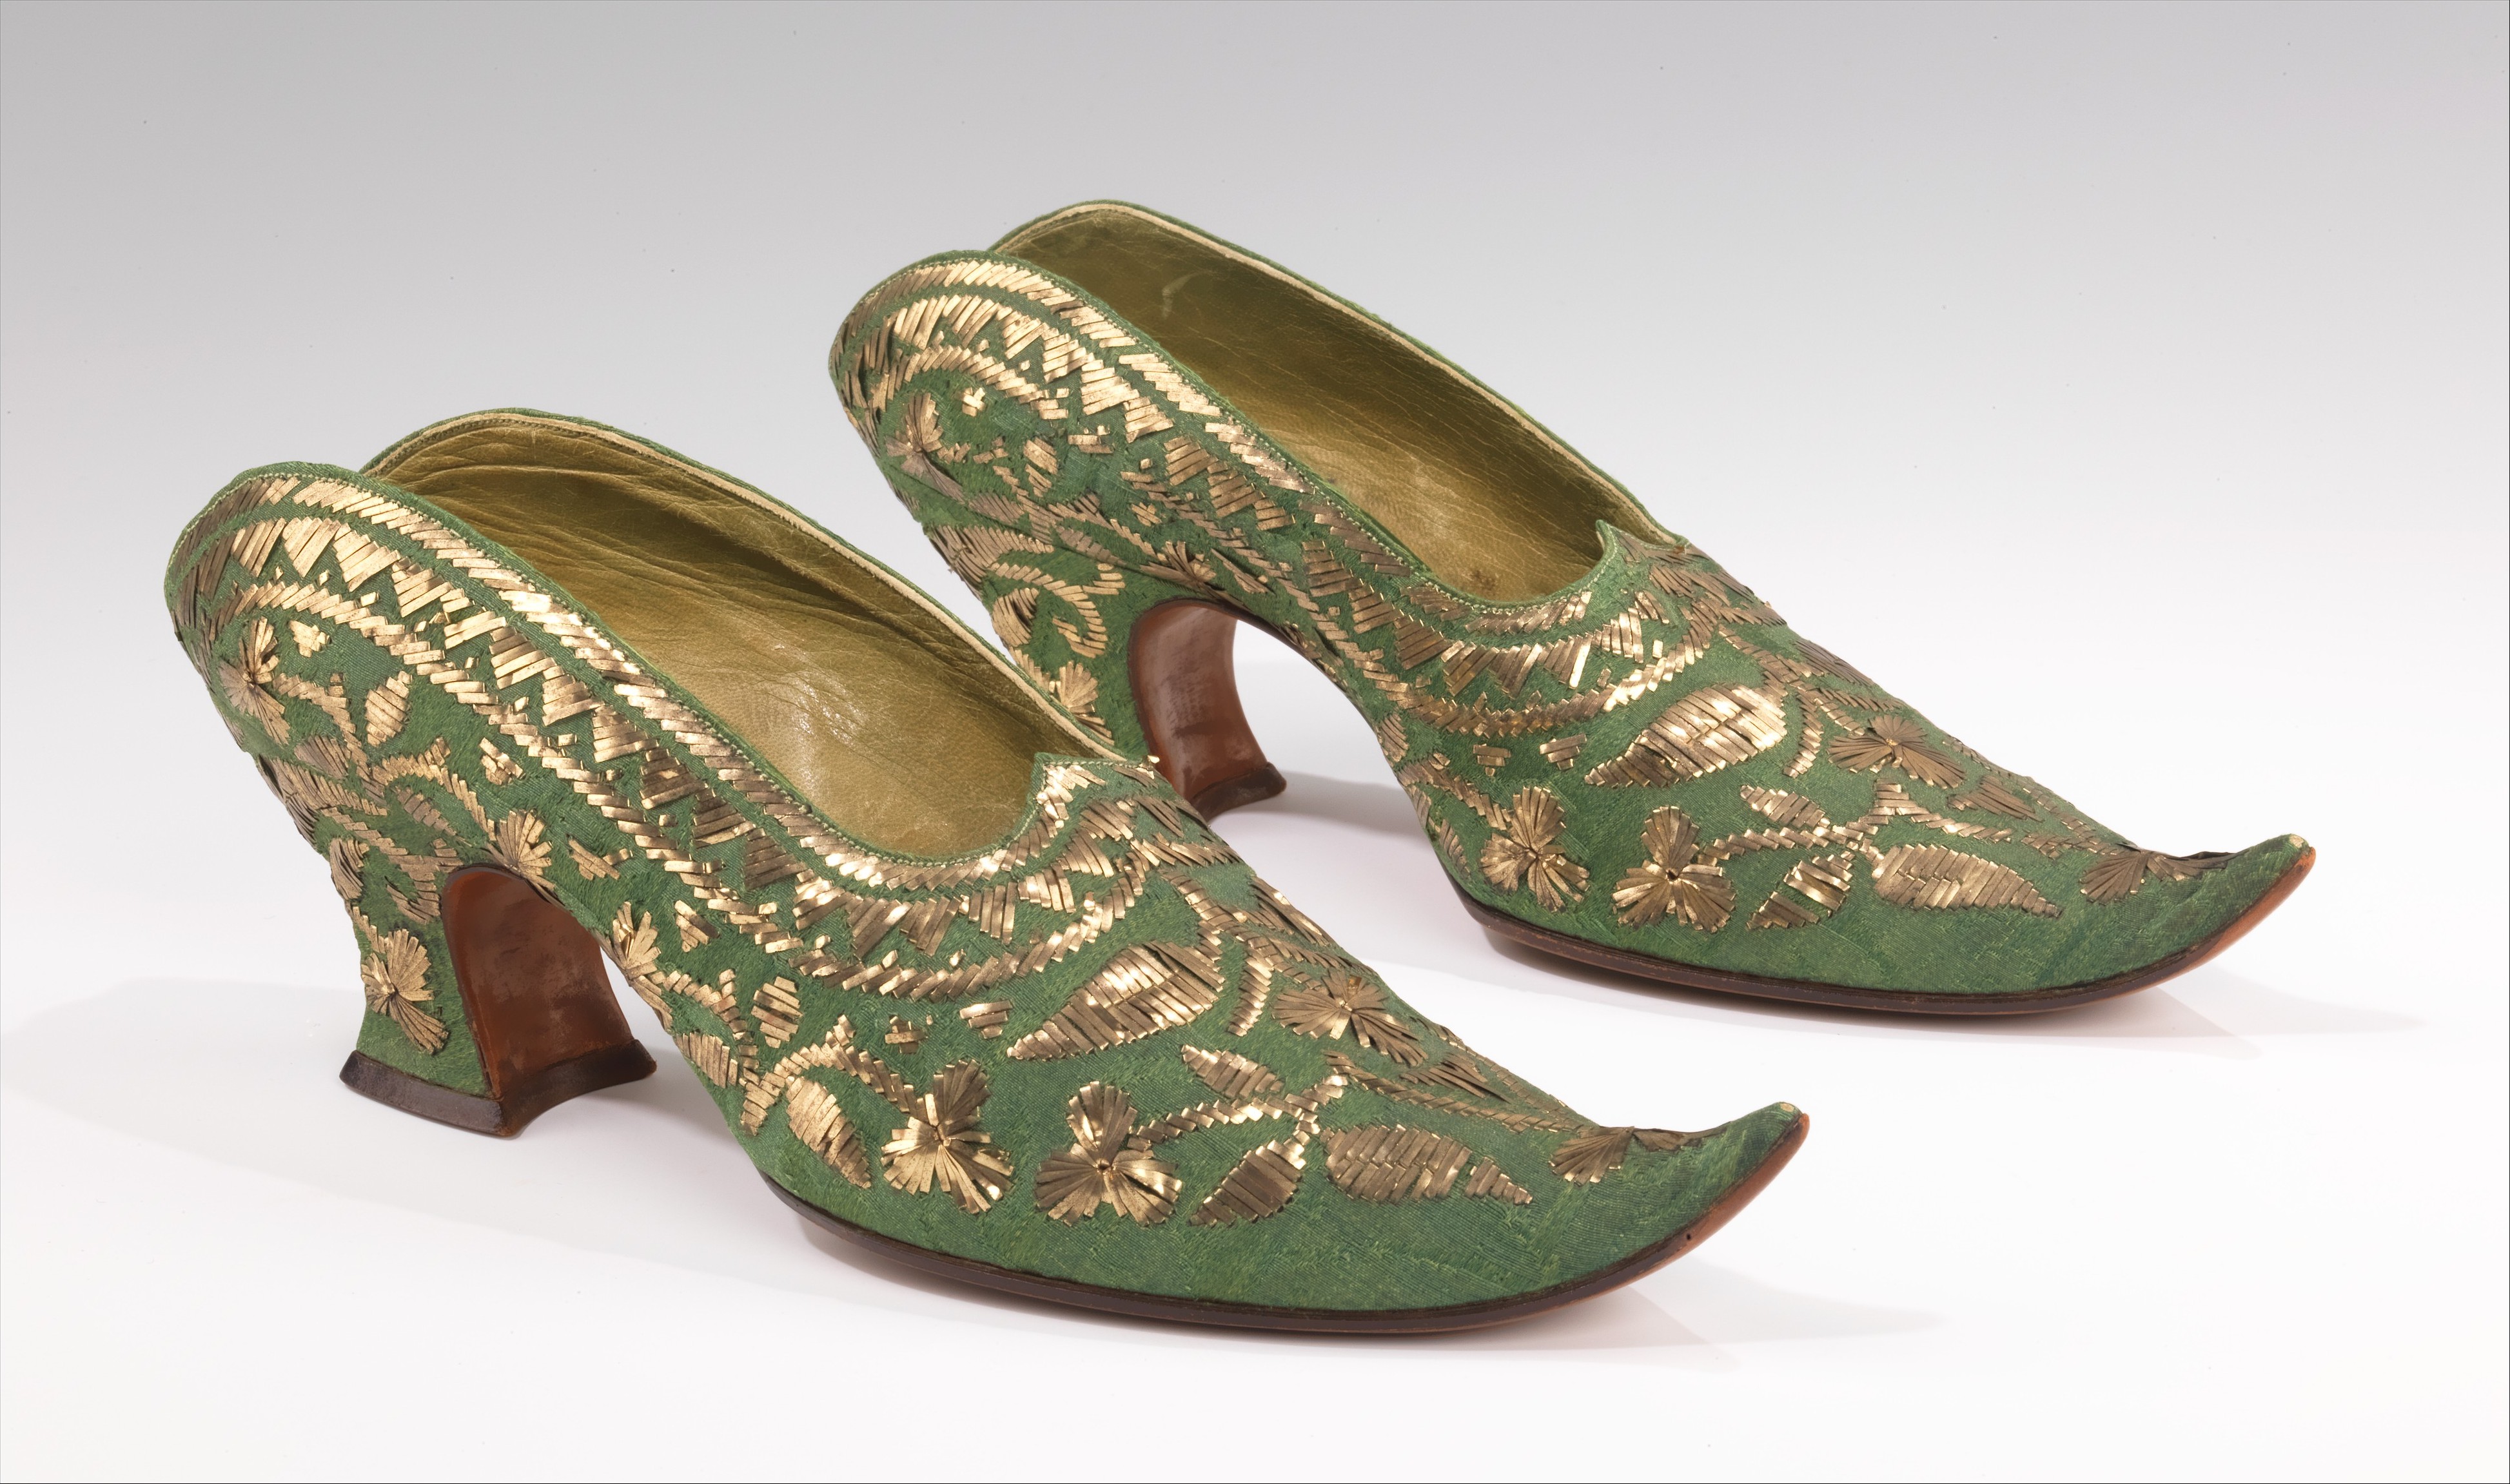 Обувь Османской империи 16 век